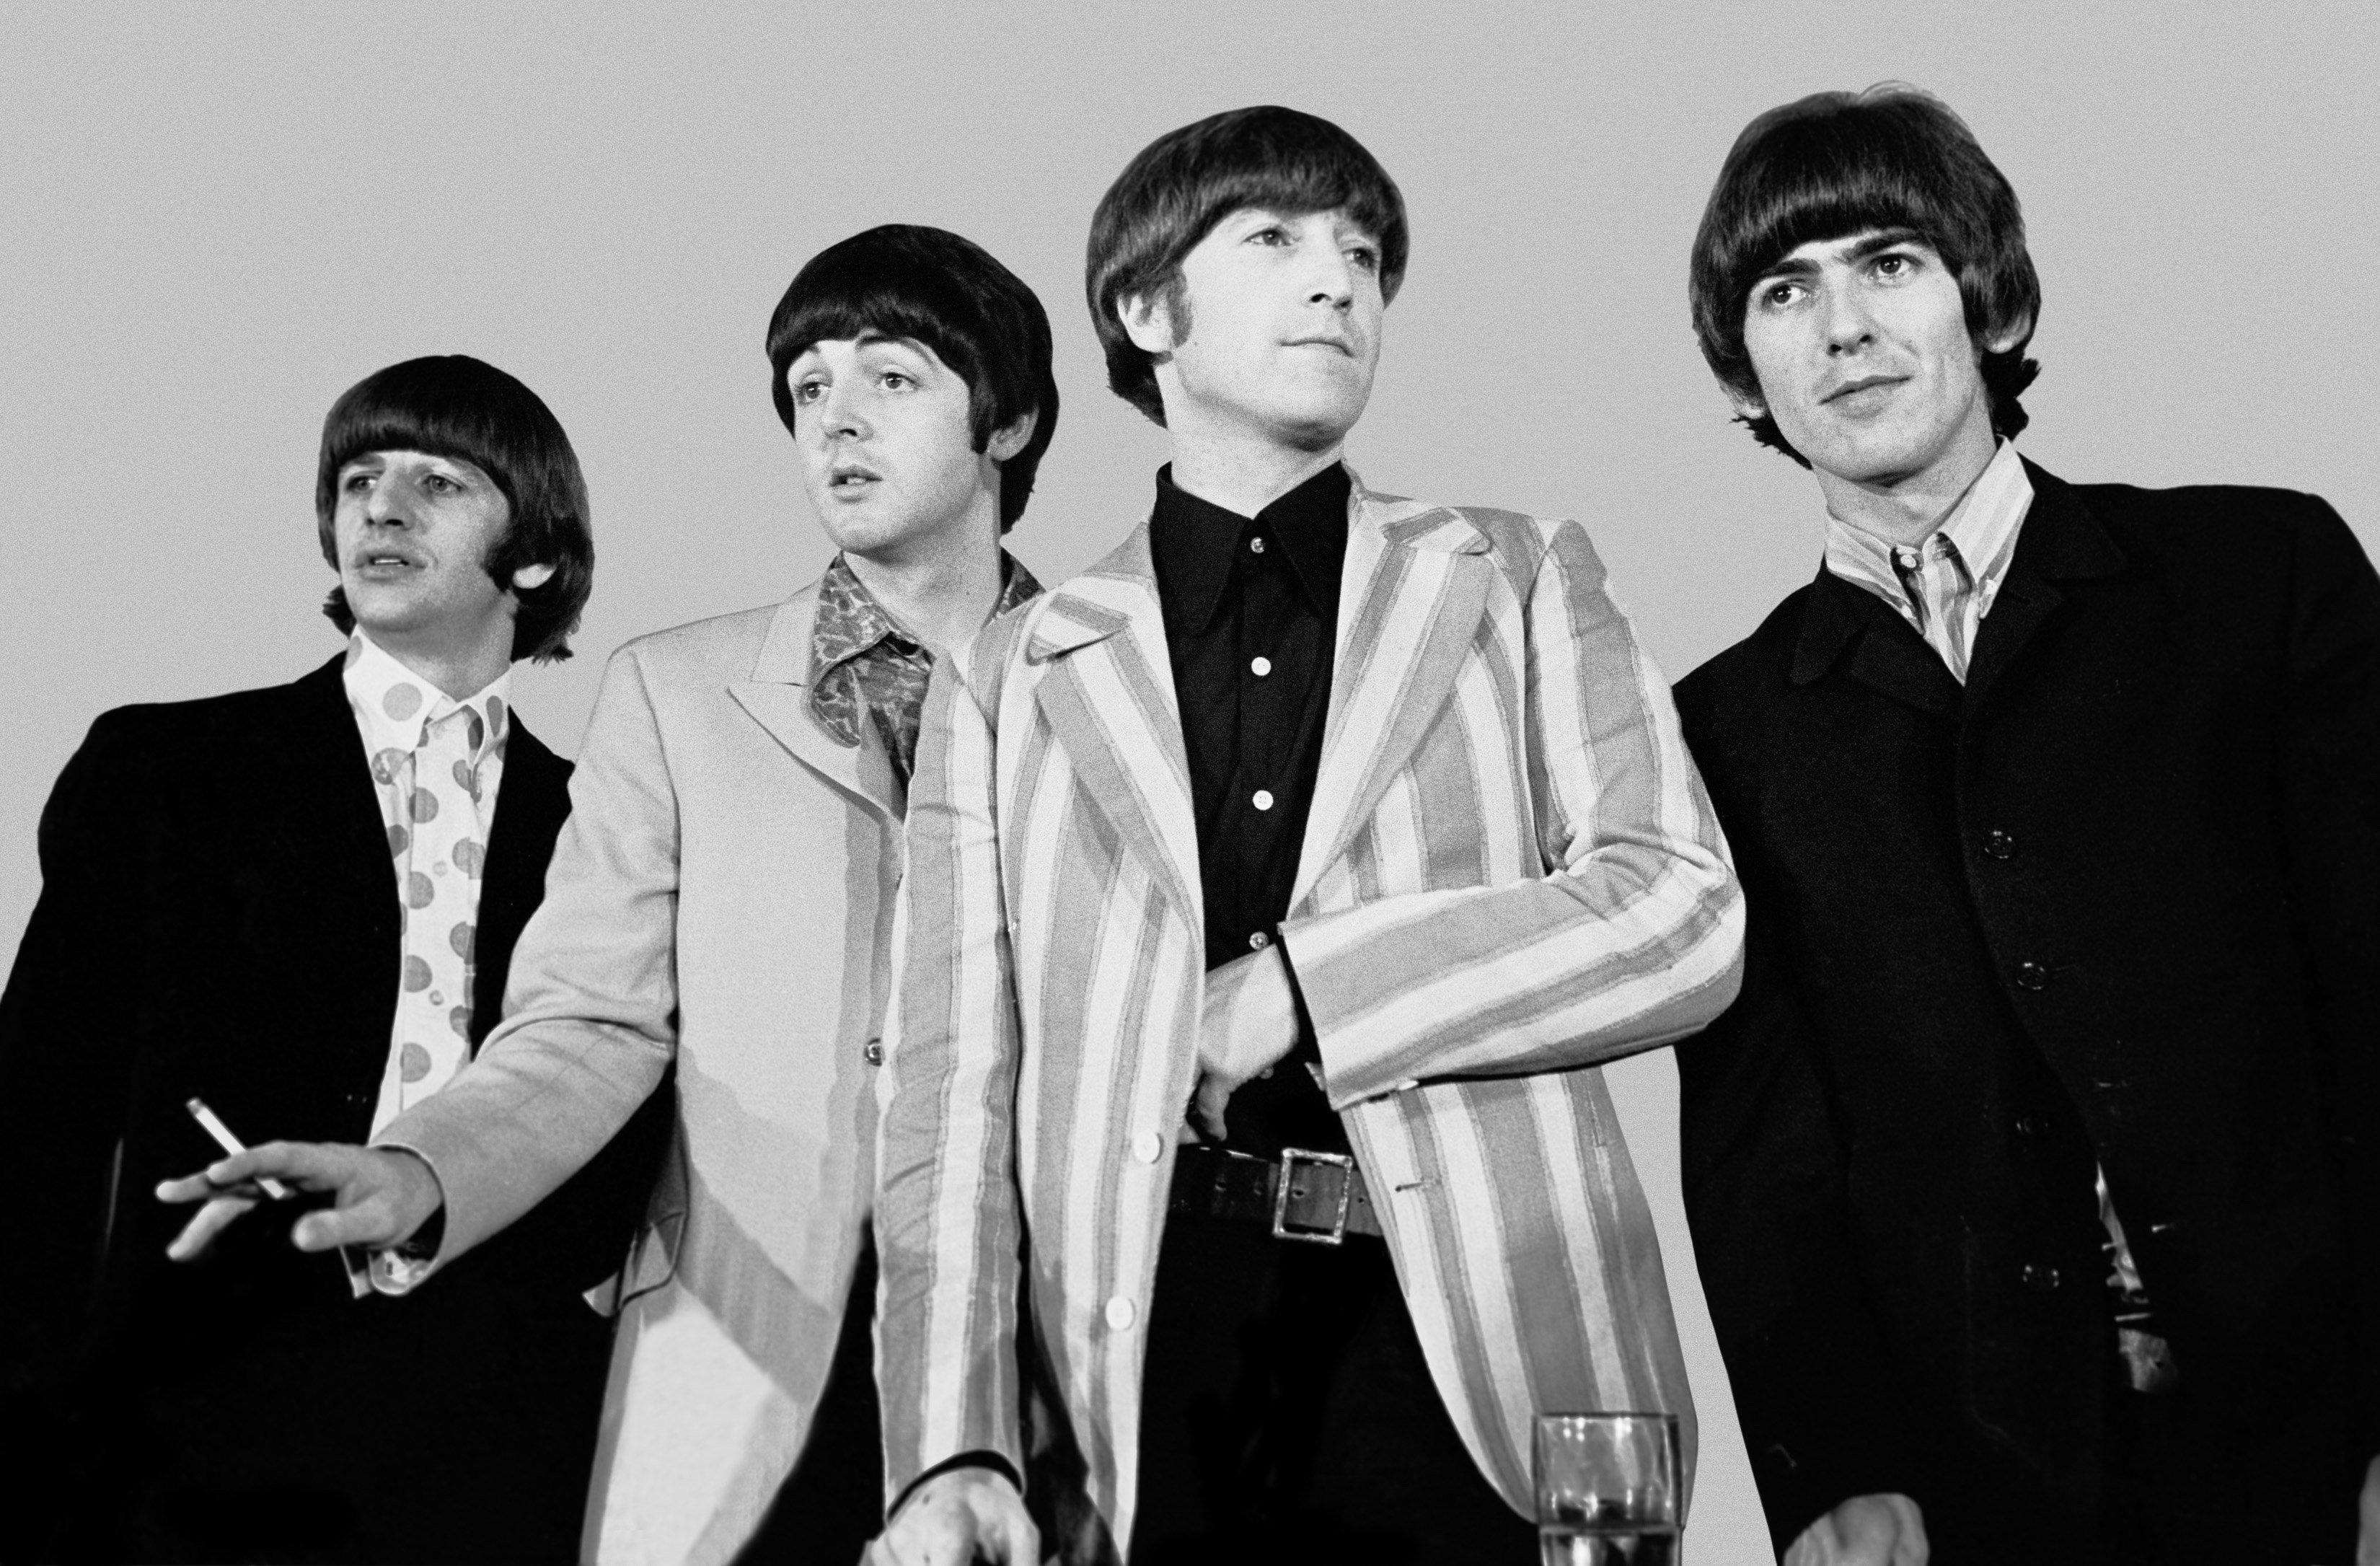 La canzone dei Beatles che John Lennon disse fu "distrutta"